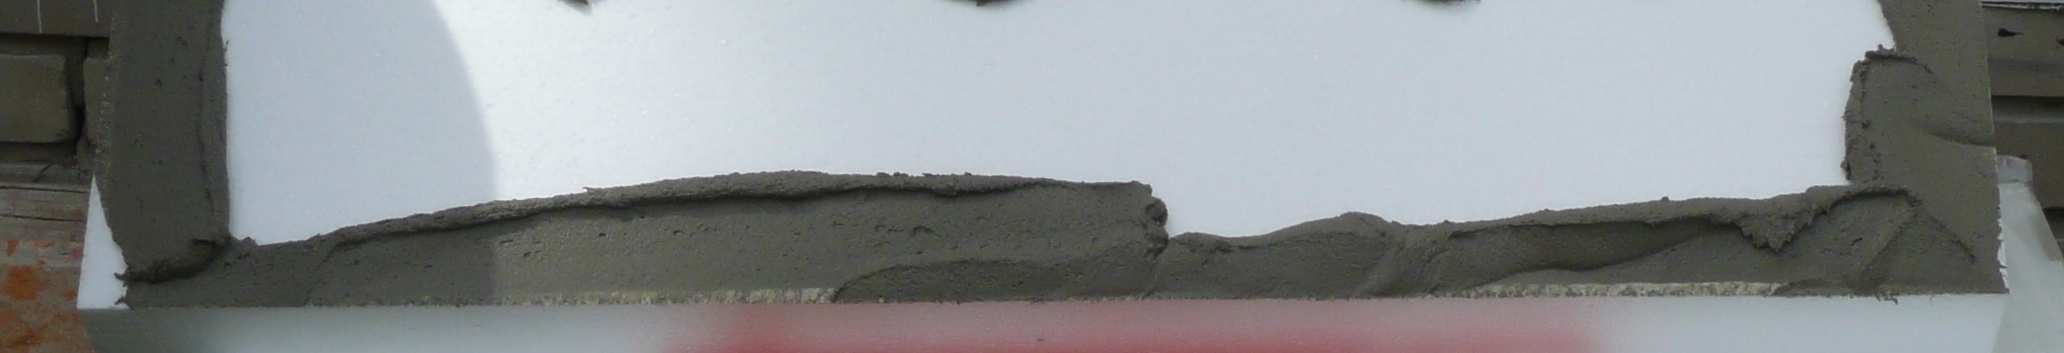 bázi, pro minerální podklady) TermoKleber RS (na cementové bázi, pro minerální podklady, rychle tuhnoucí pro nepříznivé klimatické podmínky) TermoUni (na cementové bázi, pro všechny minerální a